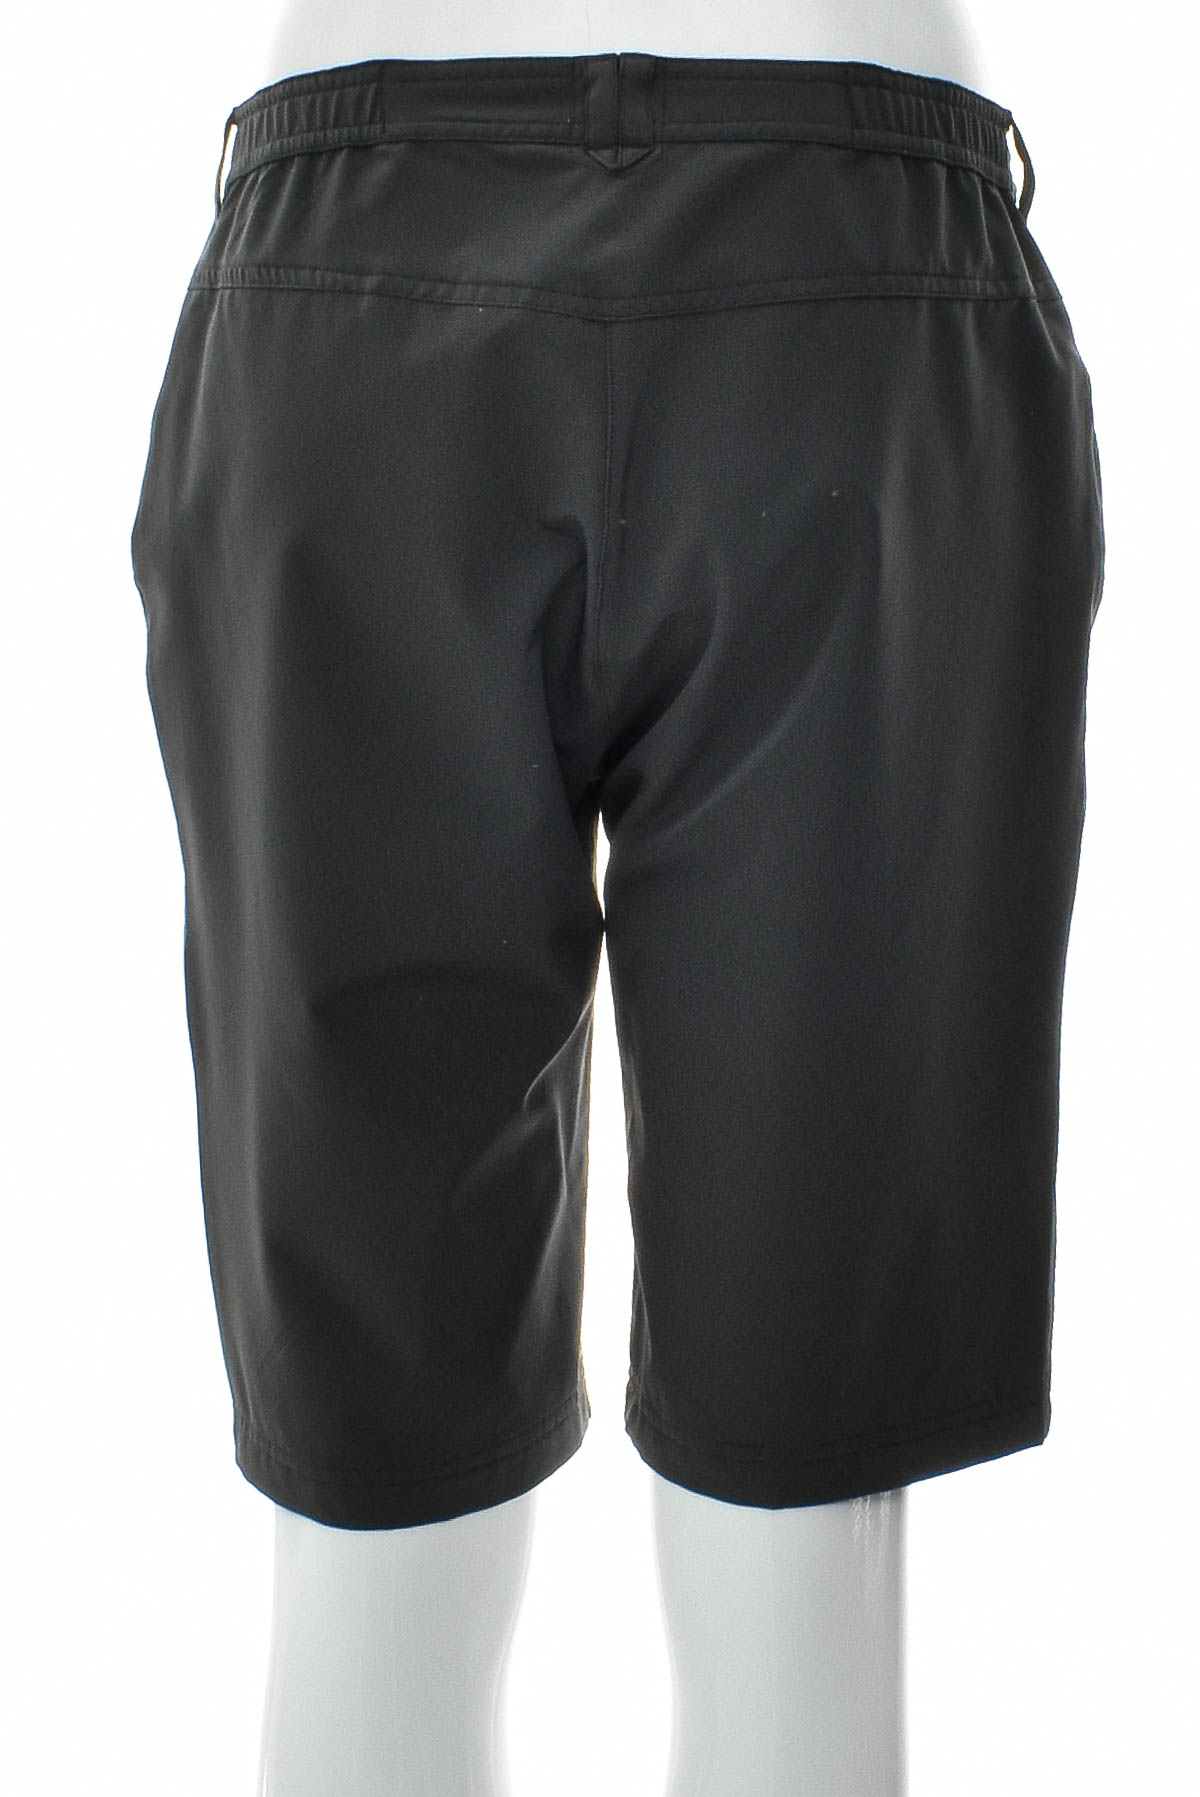 Female shorts - Linea Primero - 1